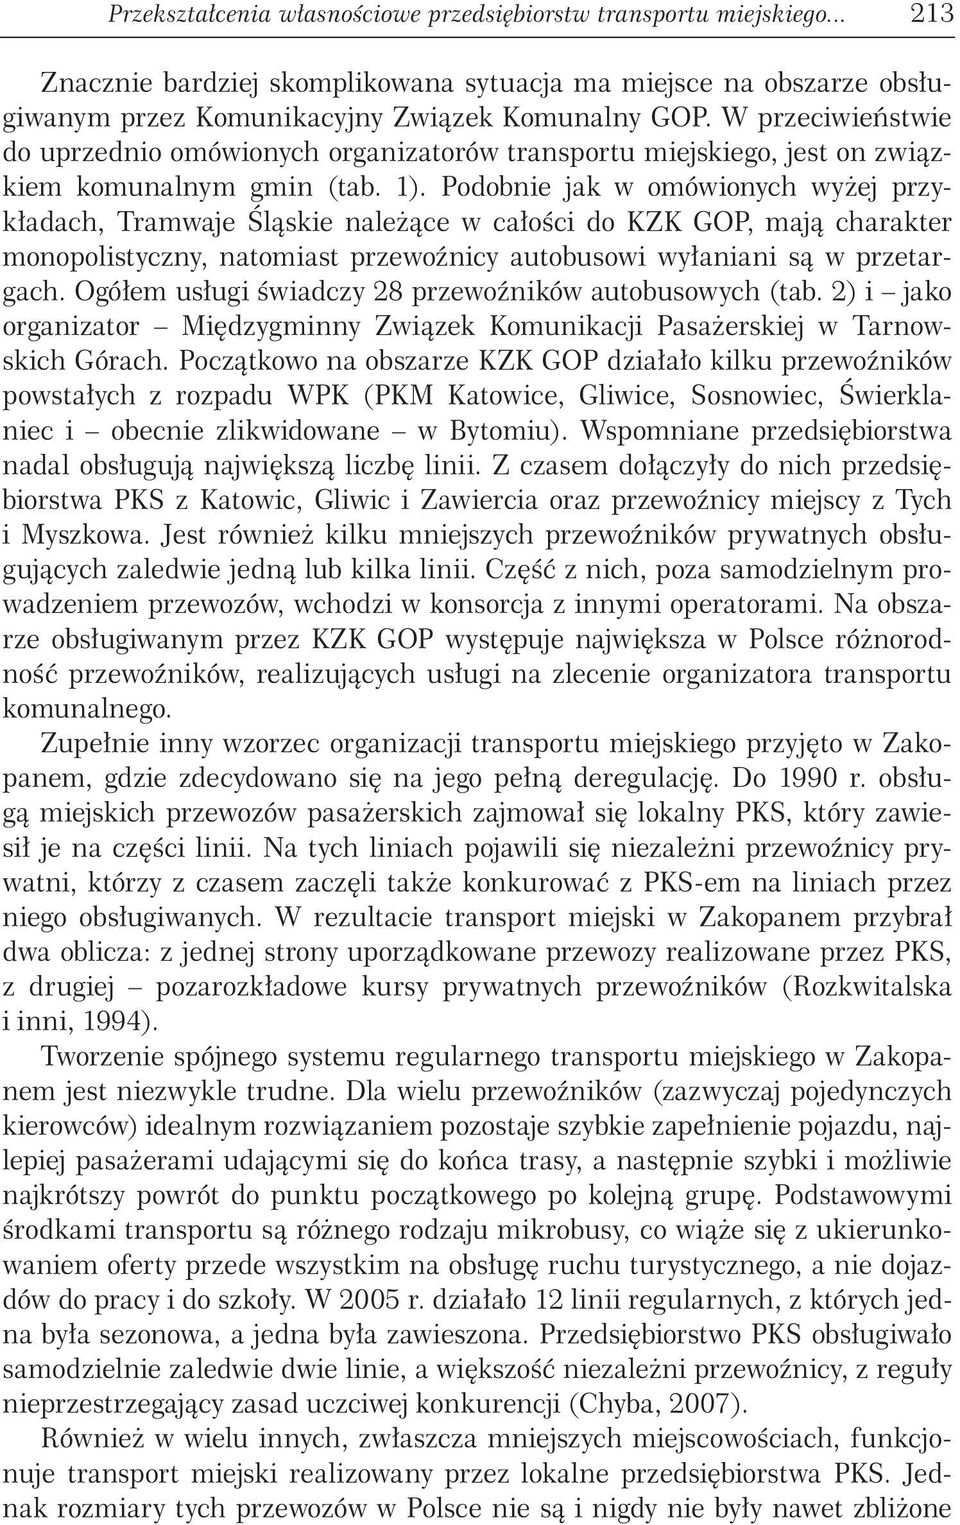 Podobnie jak w omówionych wyżej przykładach, Tramwaje Śląskie należące w całości do KZK GOP, mają charakter monopolistyczny, natomiast przewoźnicy autobusowi wyłaniani są w przetargach.